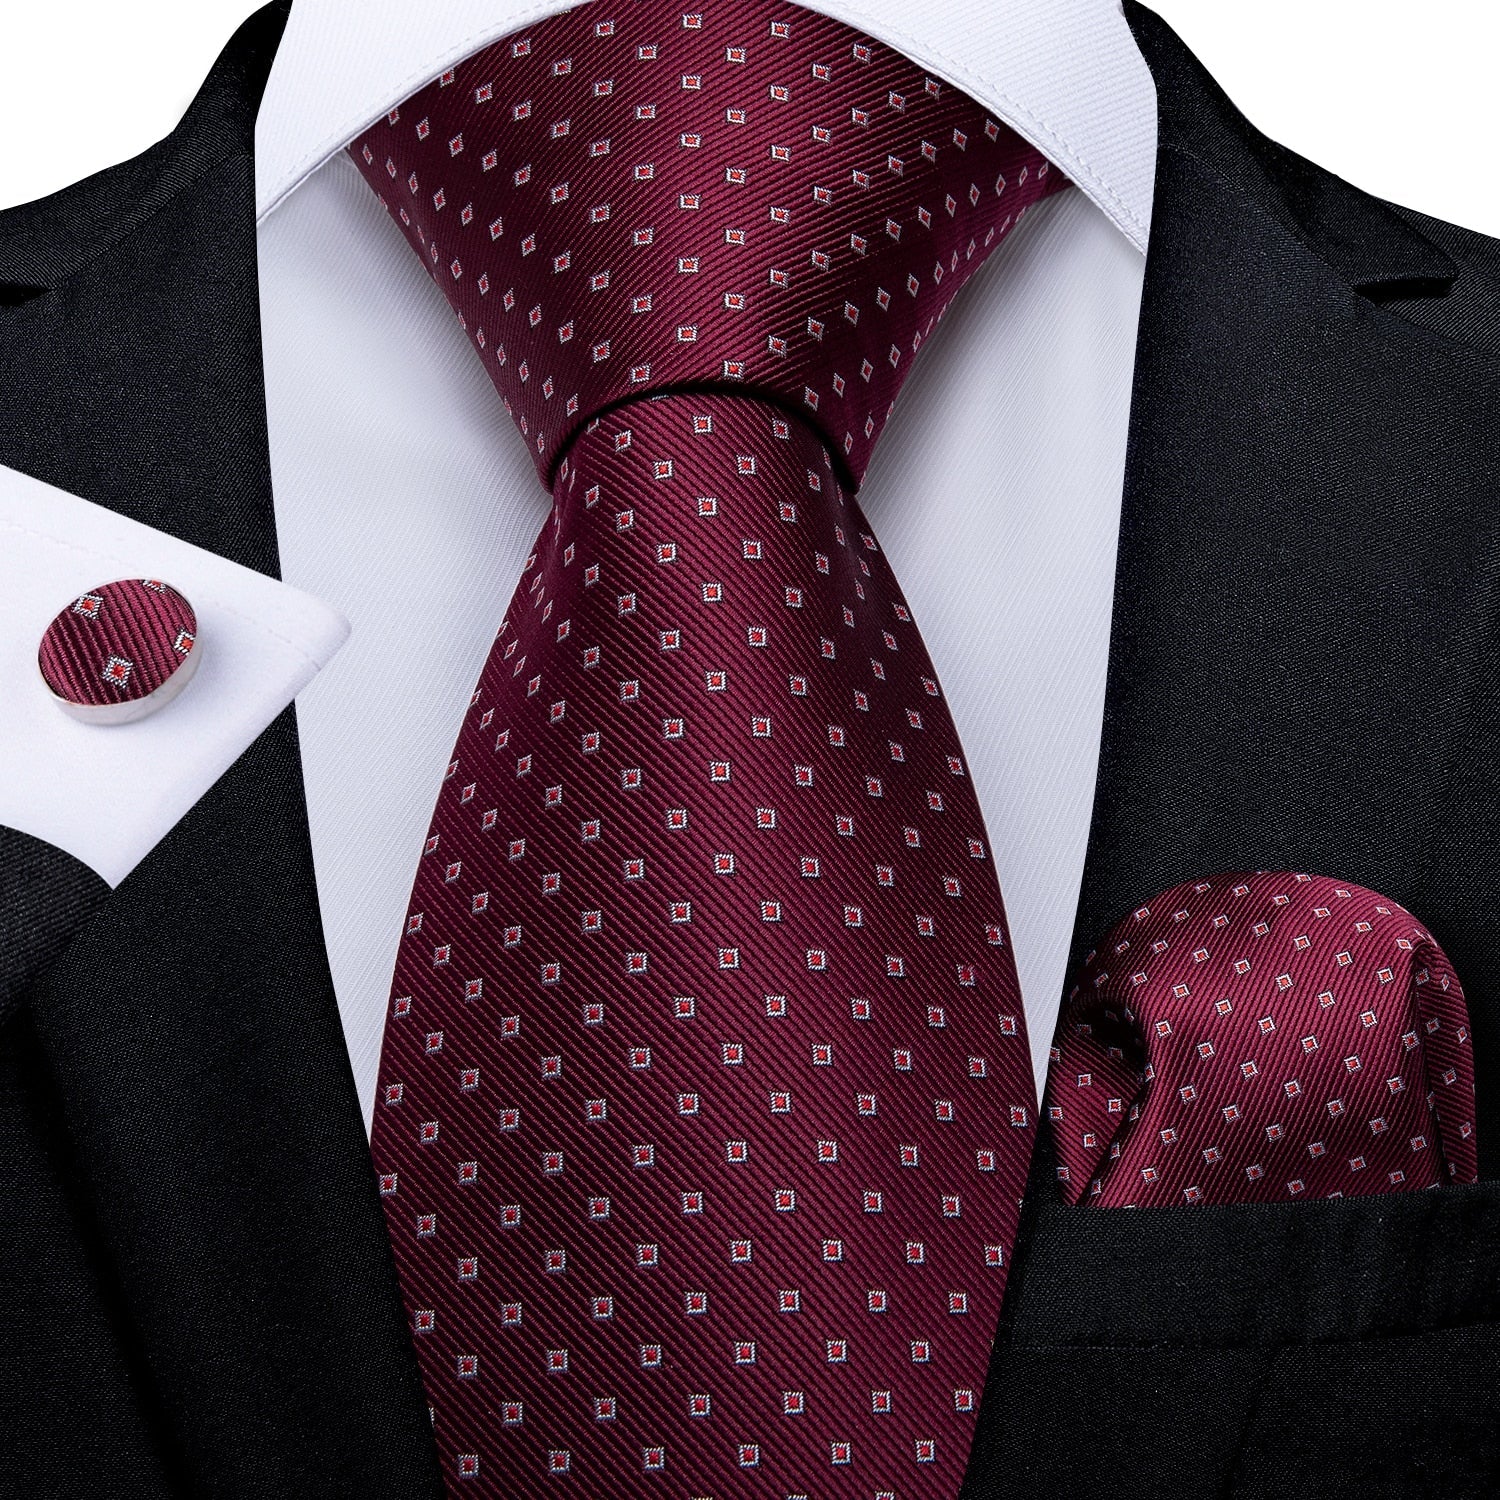 Bourgondische rode stropdas met rood patroon